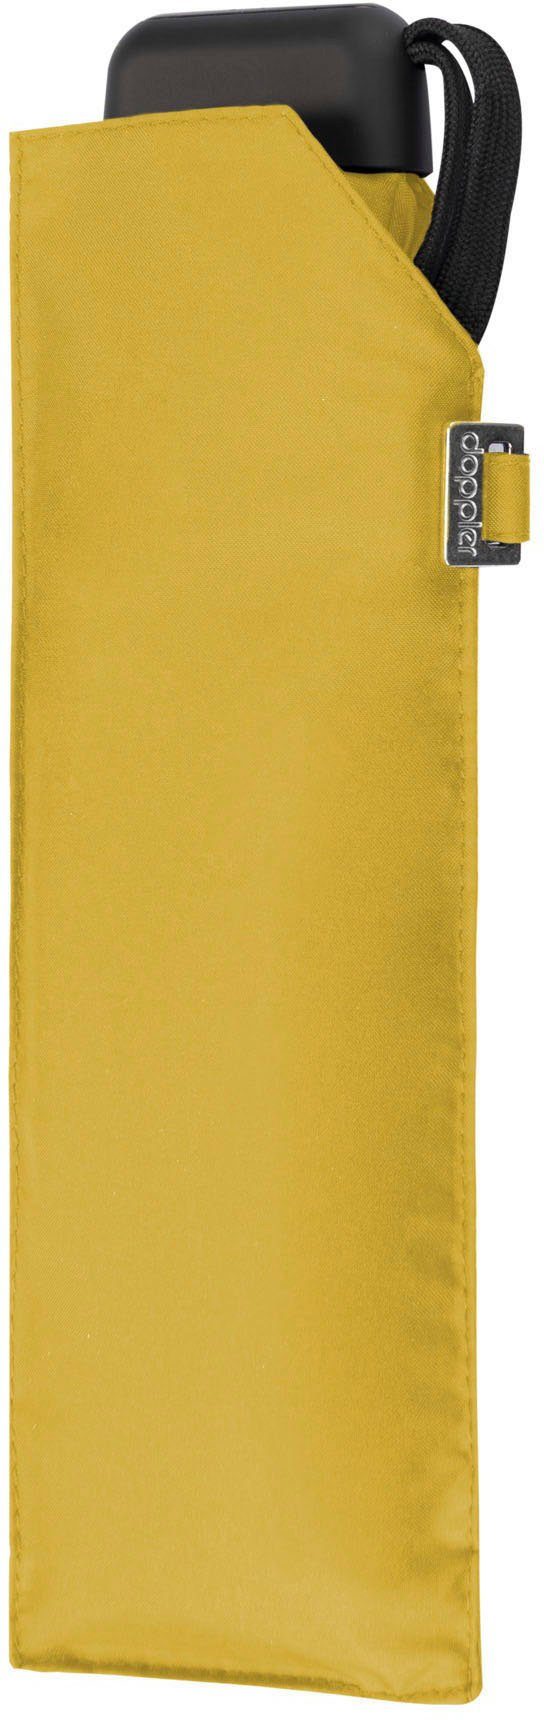 shiny yellow Carbonsteel Taschenregenschirm uni, Slim doppler®